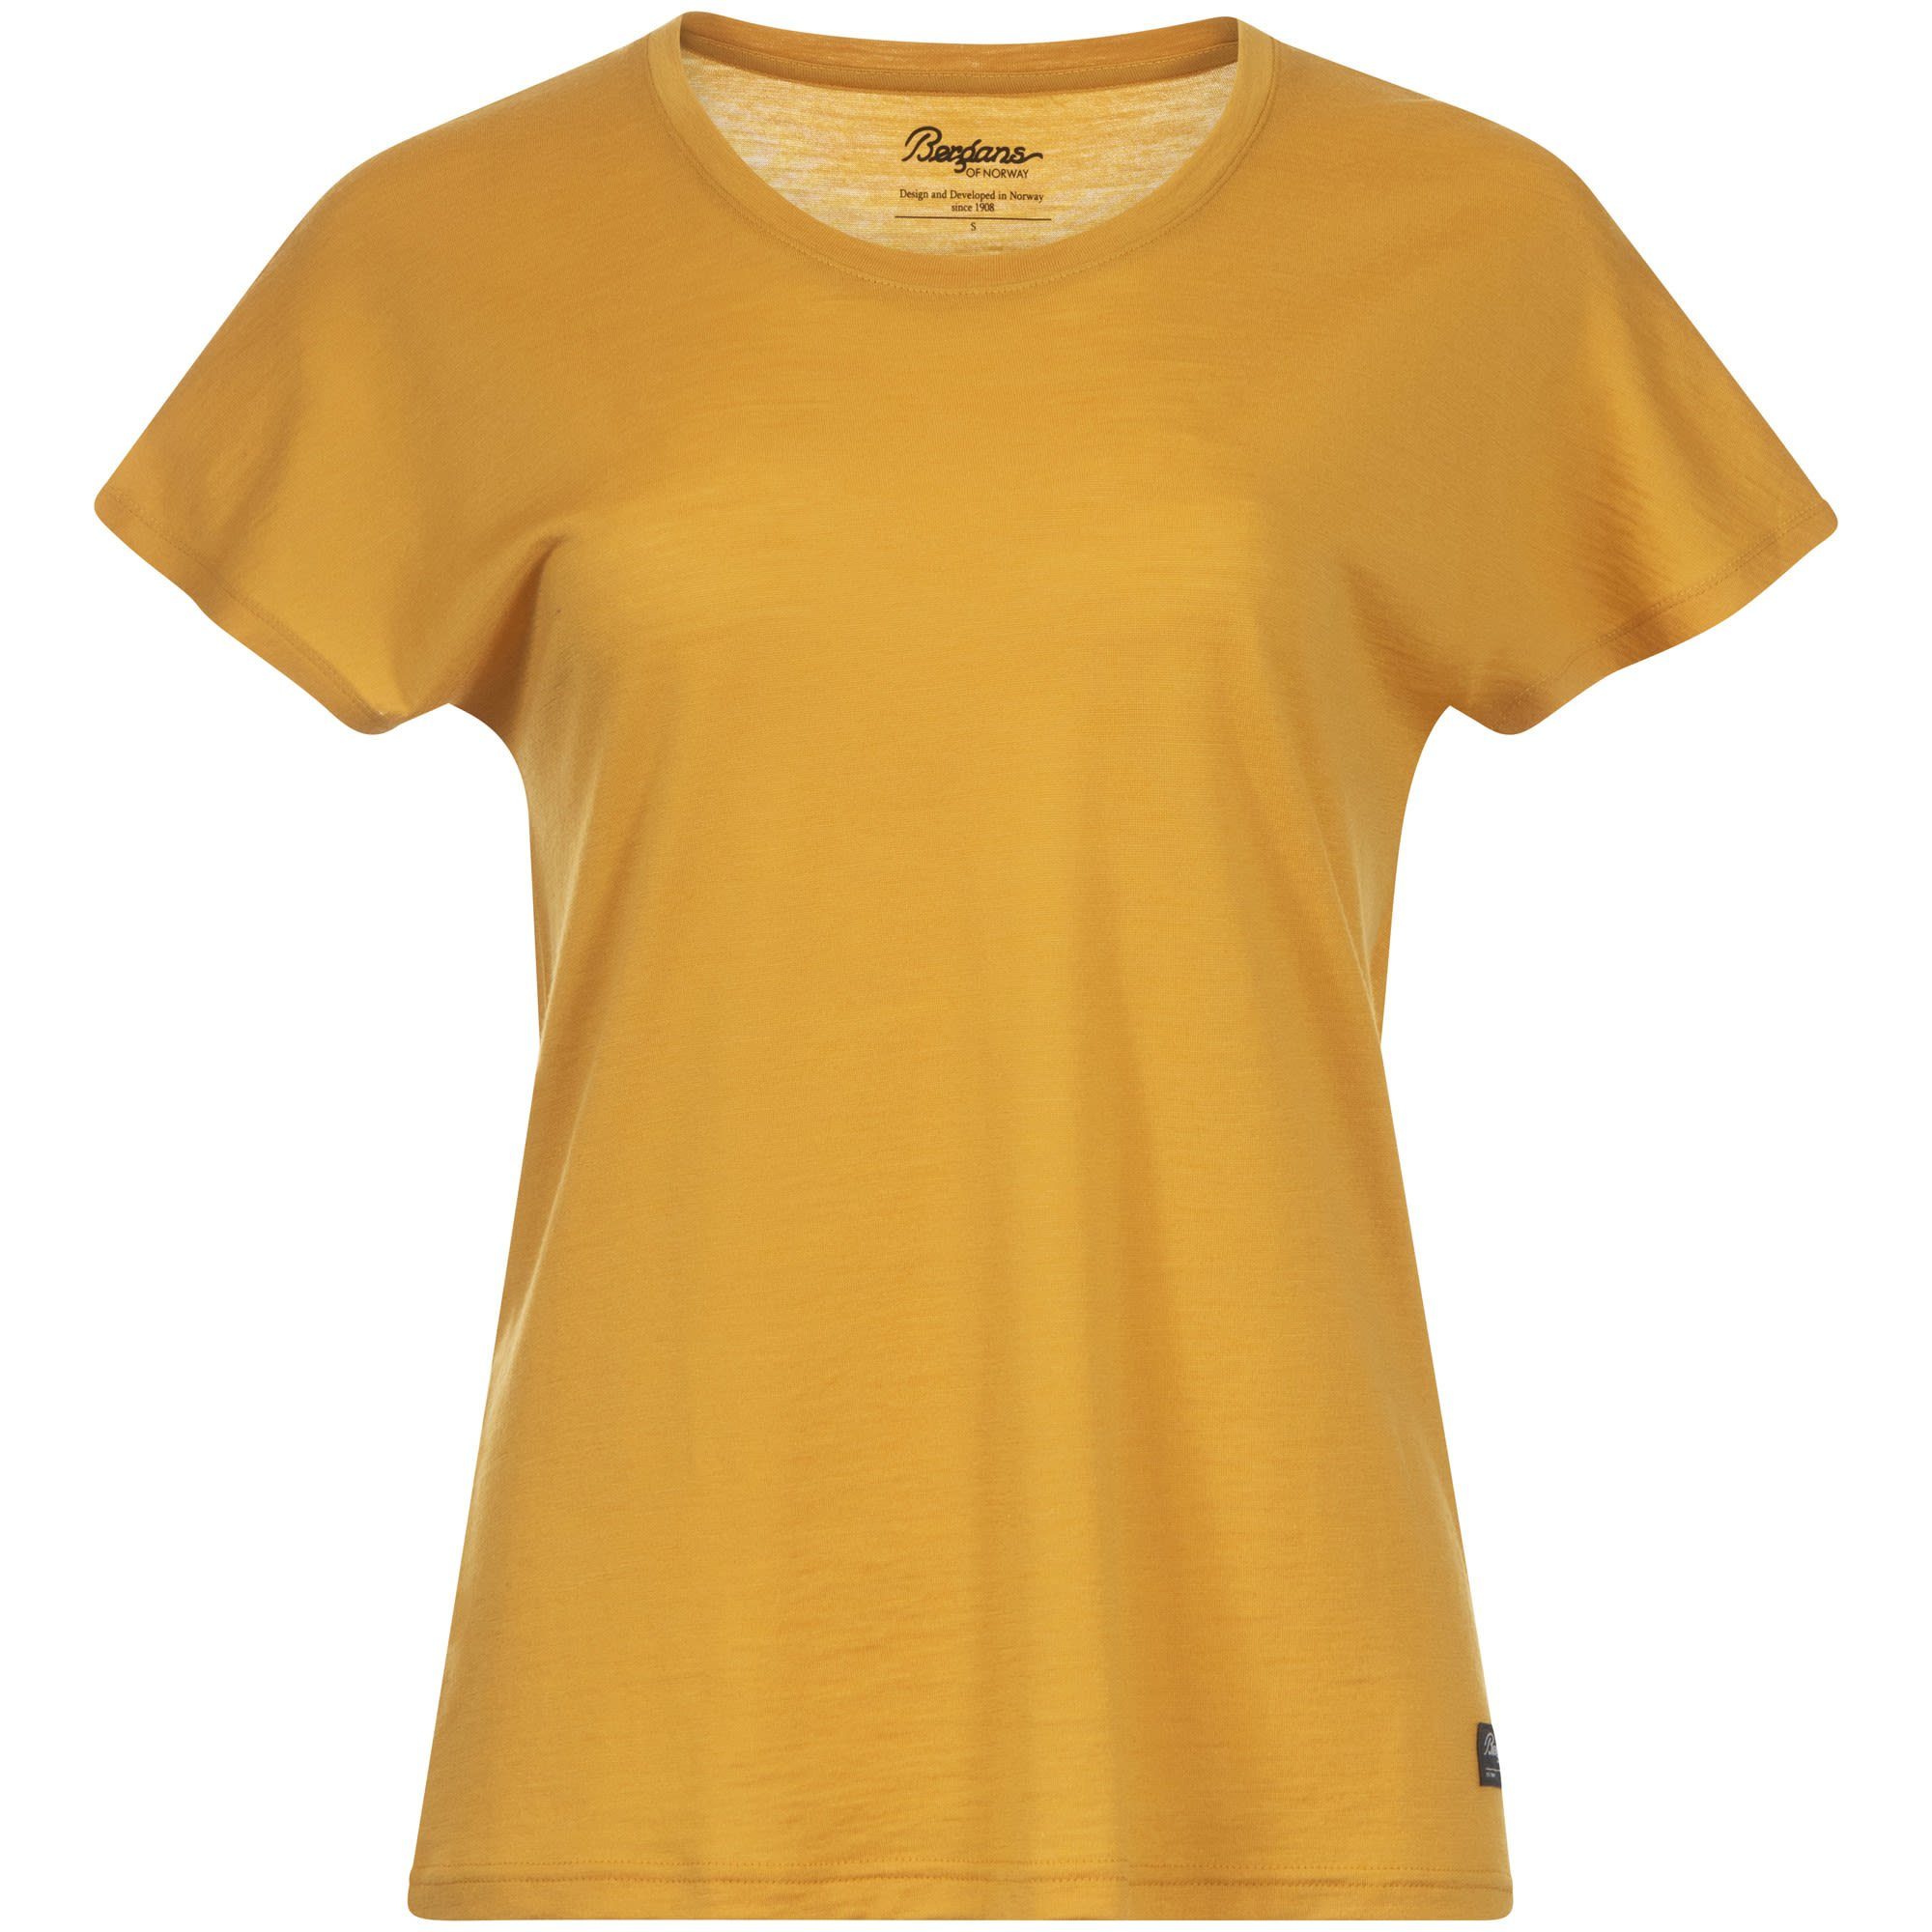 W Wool (vorgängermodell) Bergans Urban Tee Golden Bergans T-Shirt Yellow Damen